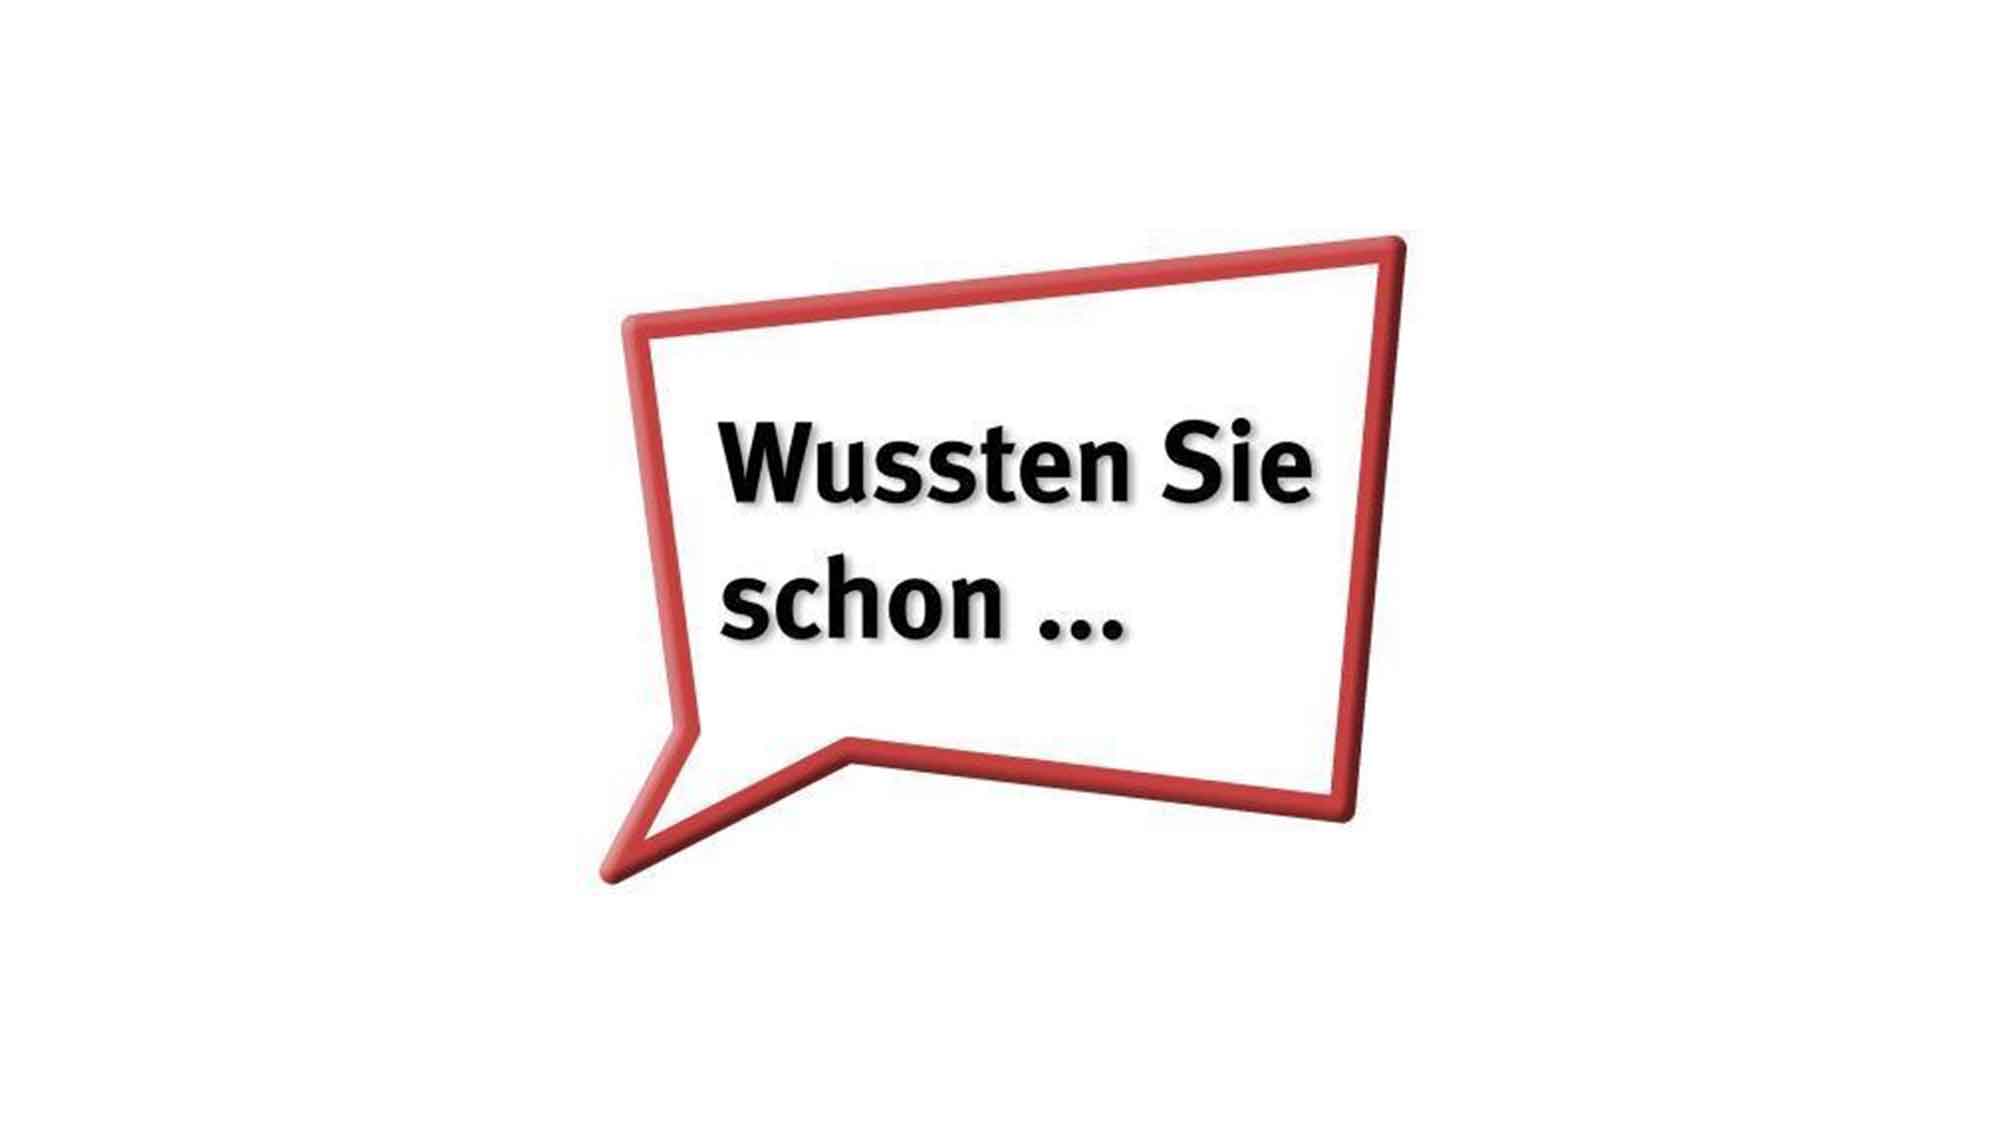 Verbraucherzentrale Nordrhein Westfalen: »Wussten Sie schon, dass Bratenfett und Fonduefett in den Hausmüll gehören?«